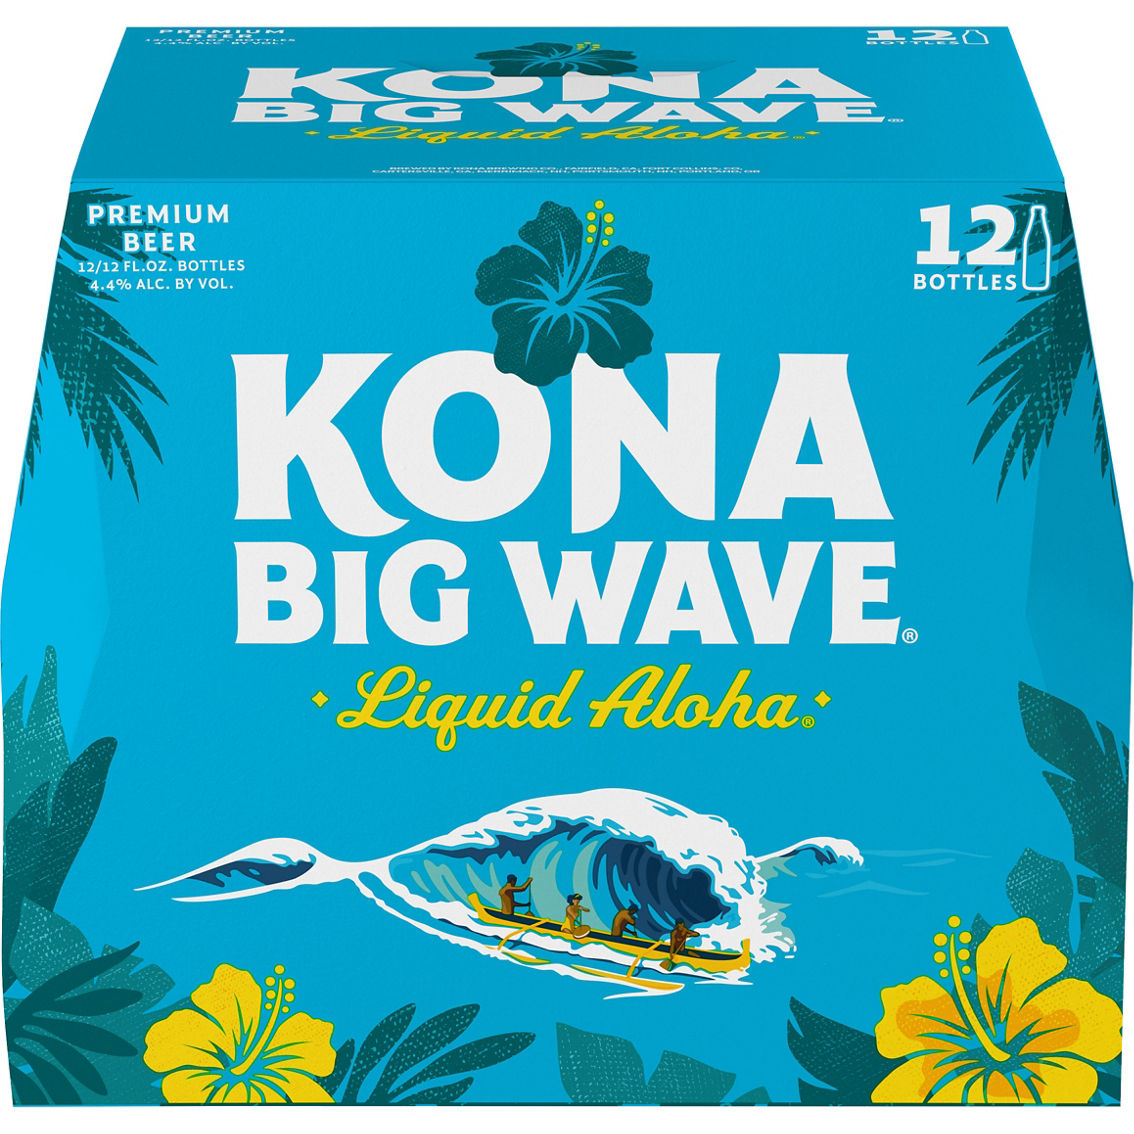 Kona Big Wave Golden Ale 12 oz. Bottles 12 pk.